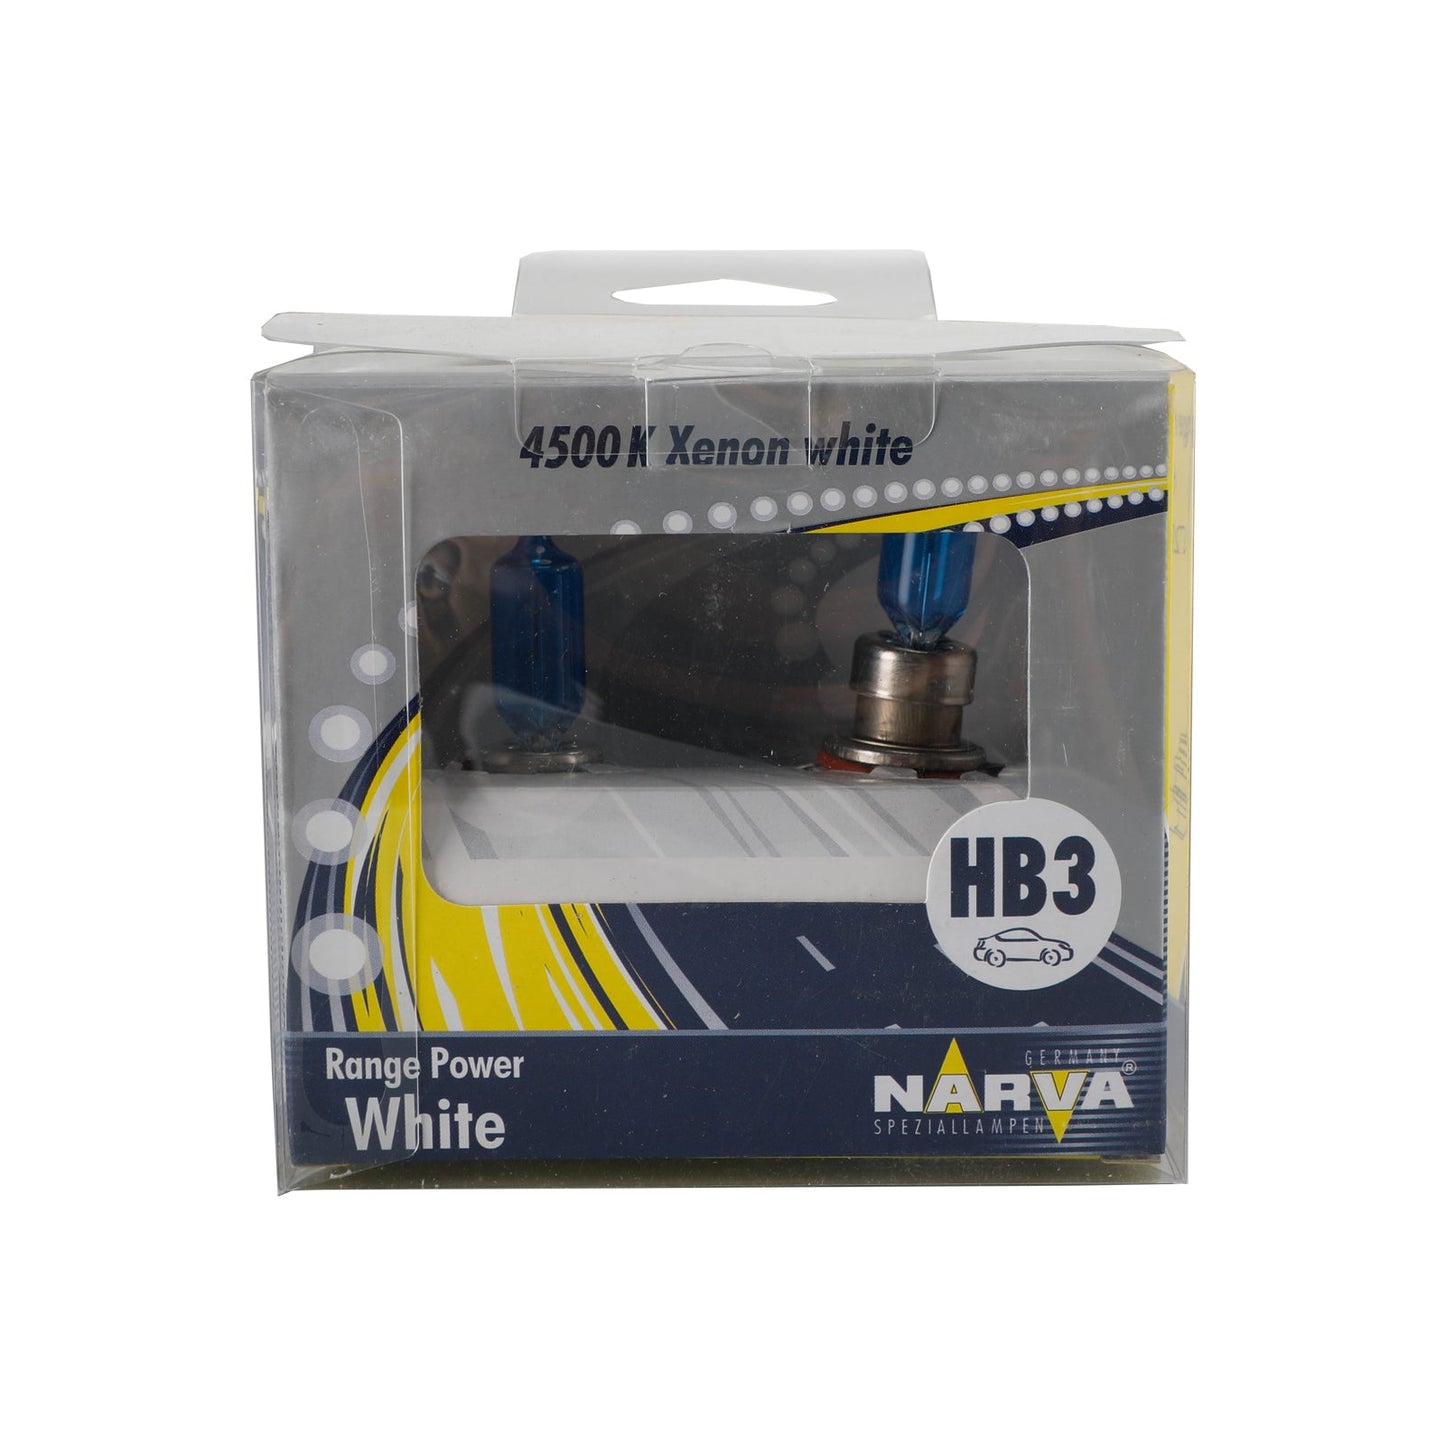 HB3 RPW 98551 For NARVA Range Power White Car Headlight Lamp 12V60W P20d